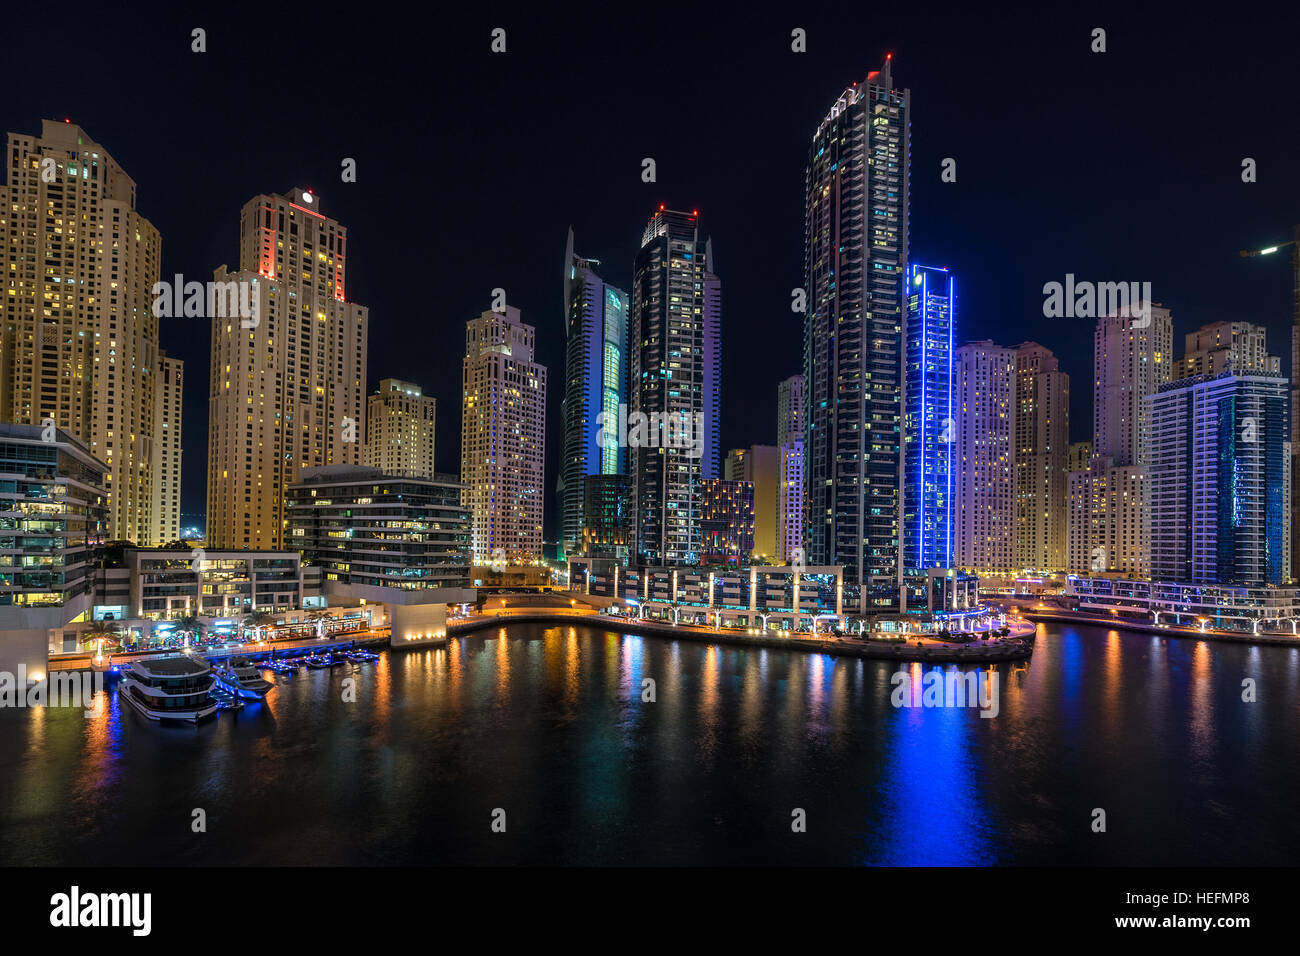 Puerto deportivo de Dubai en los Emiratos Árabes Unidos Foto de stock